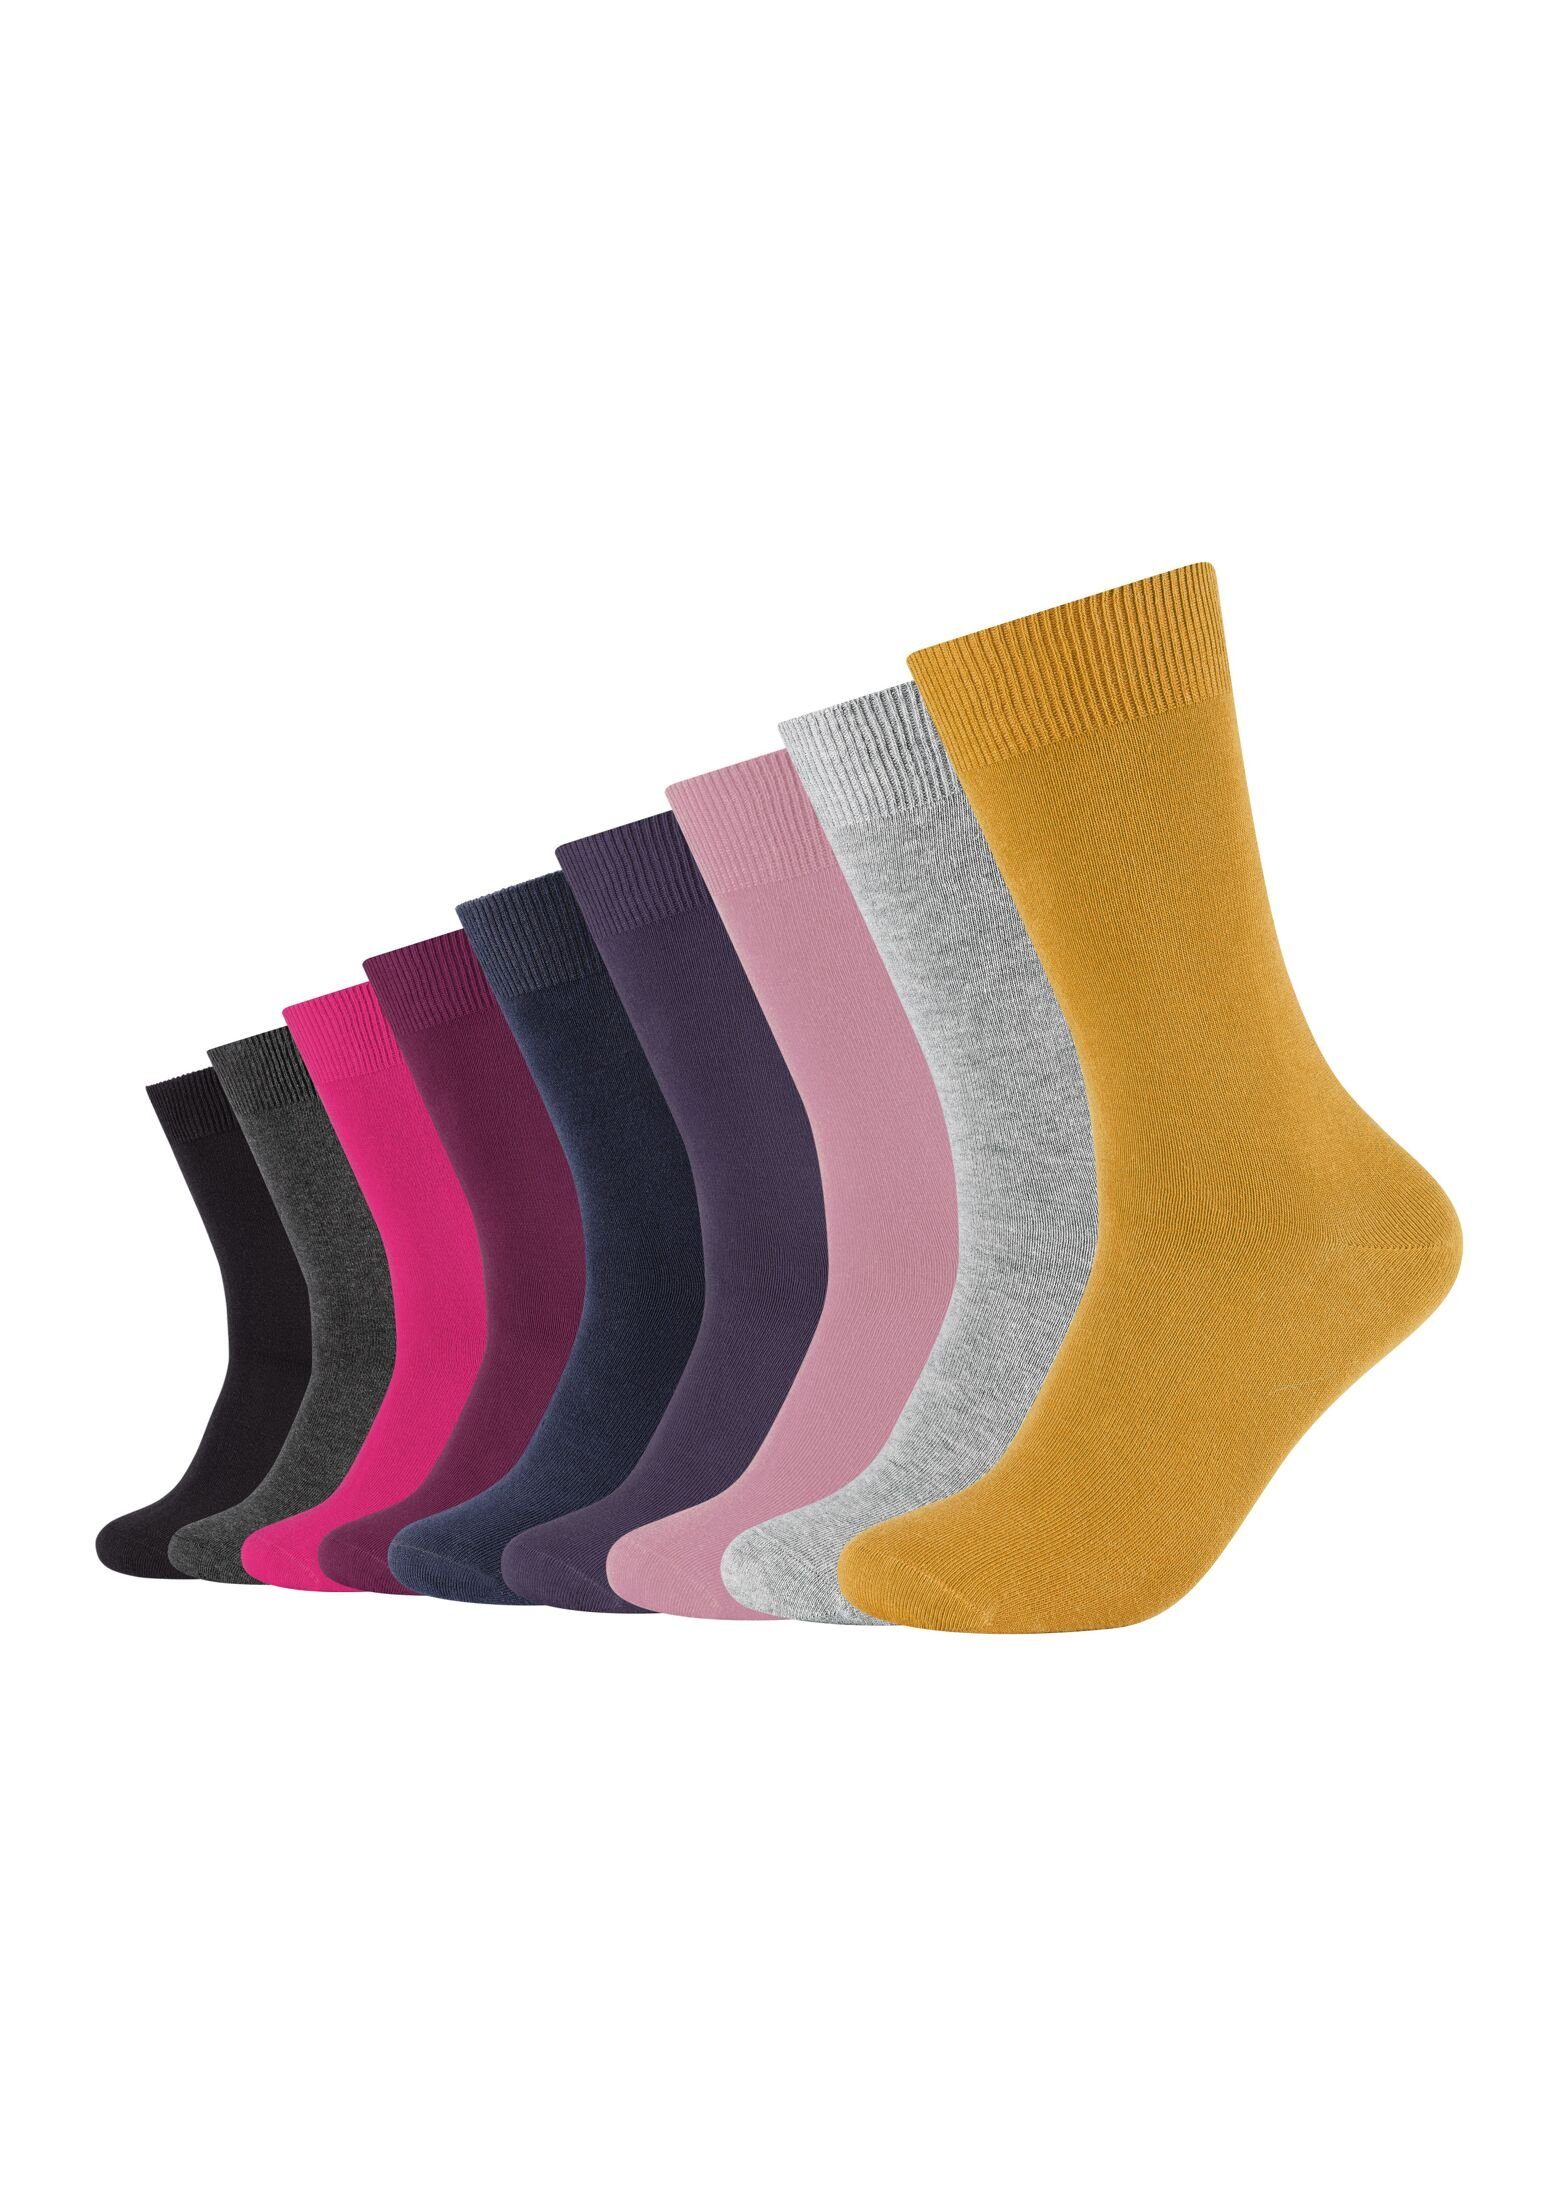 Camano Socken Socken 9er Pack chalk pink mix